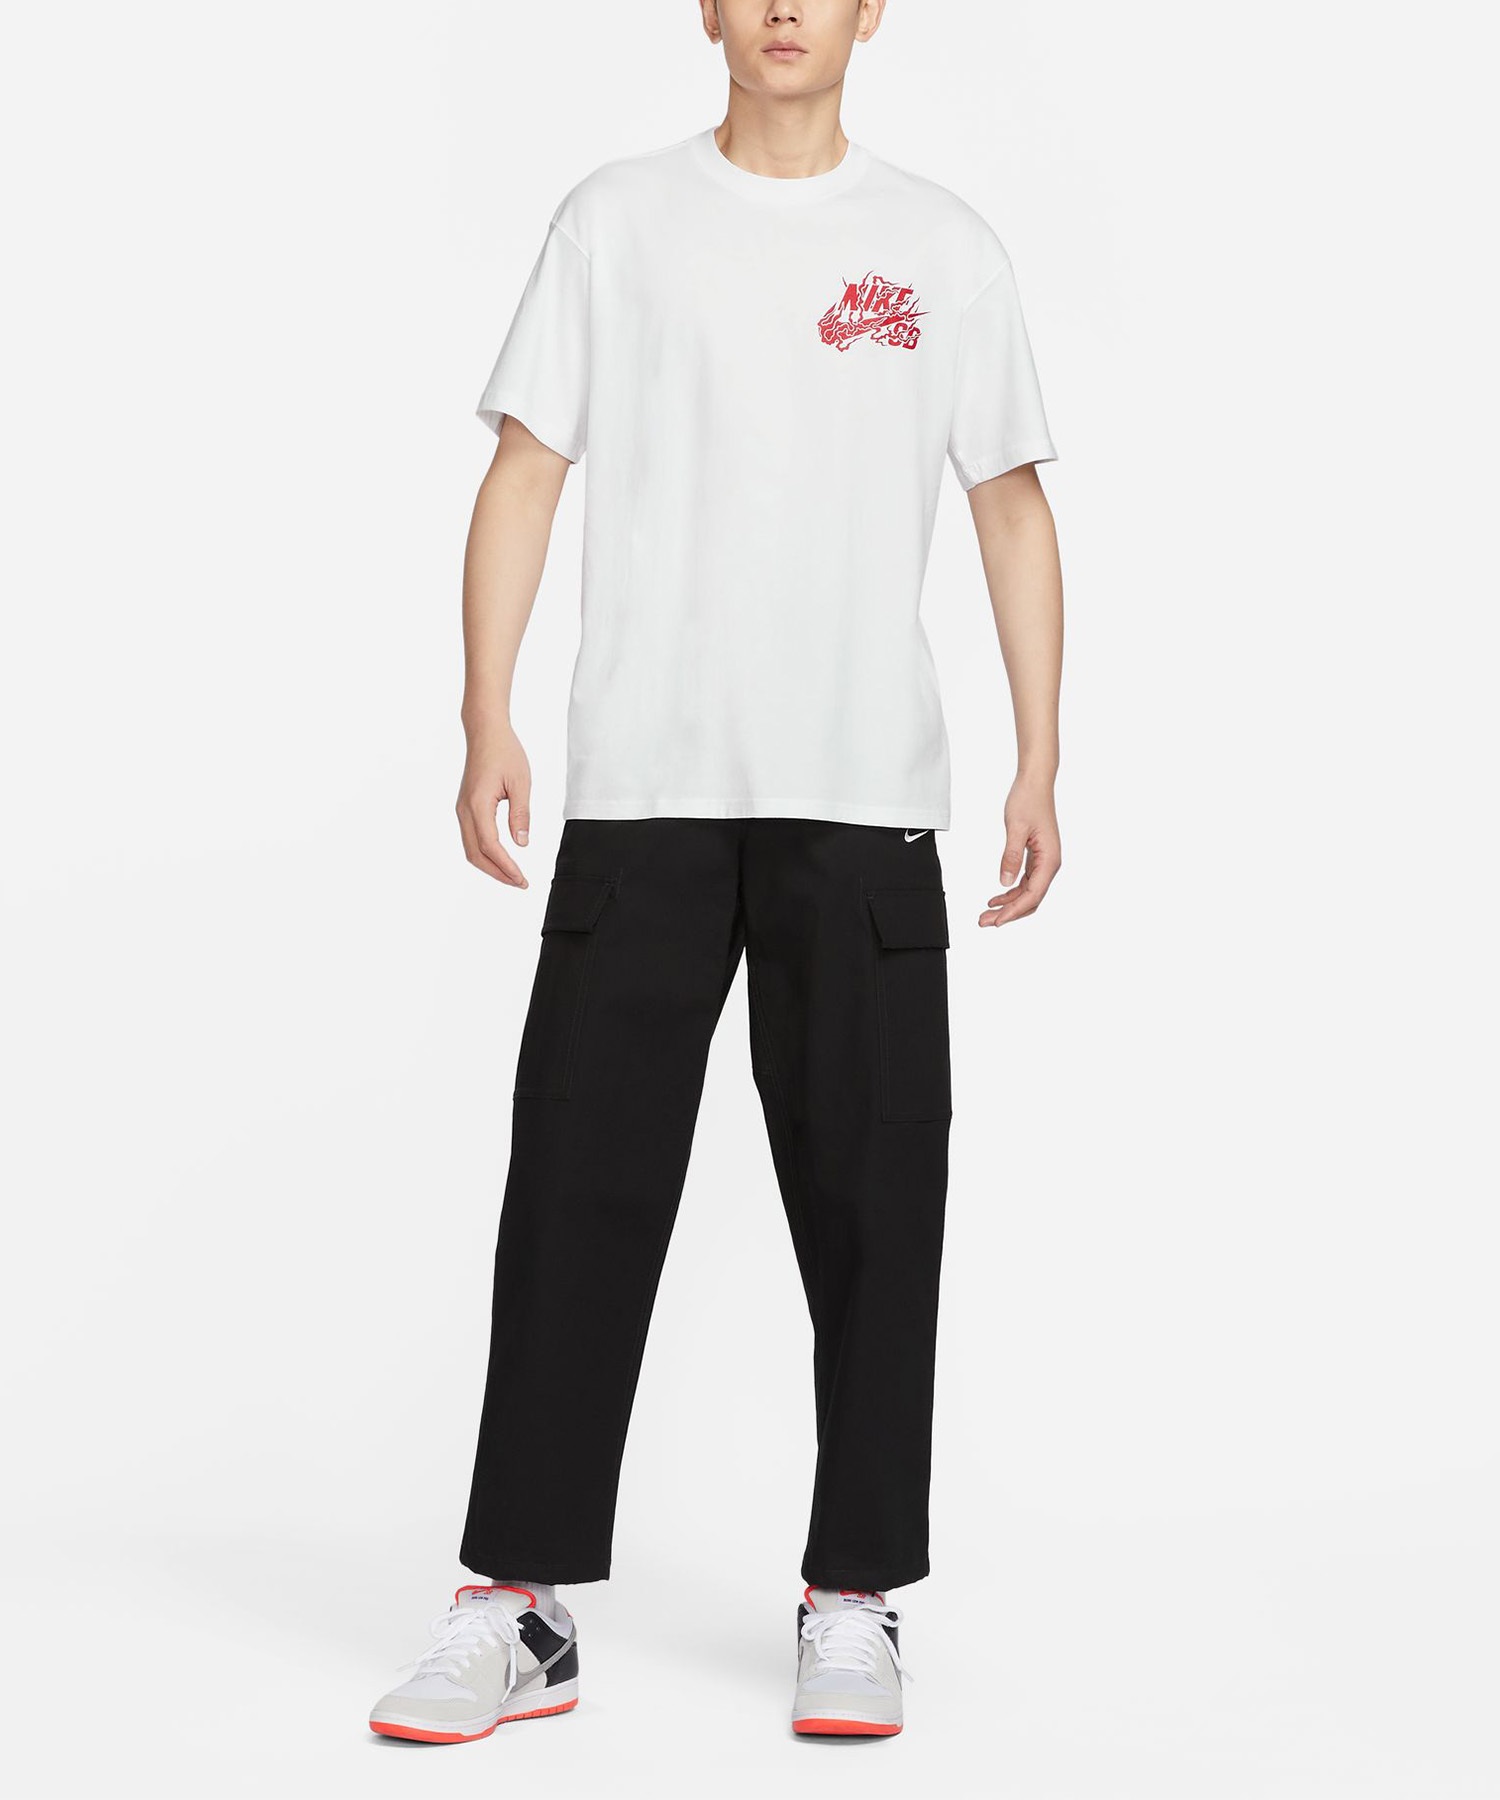 NIKE SB ナイキエスビー メンズ スケートボード Tシャツ 半袖 FQ3720-101(101-S)